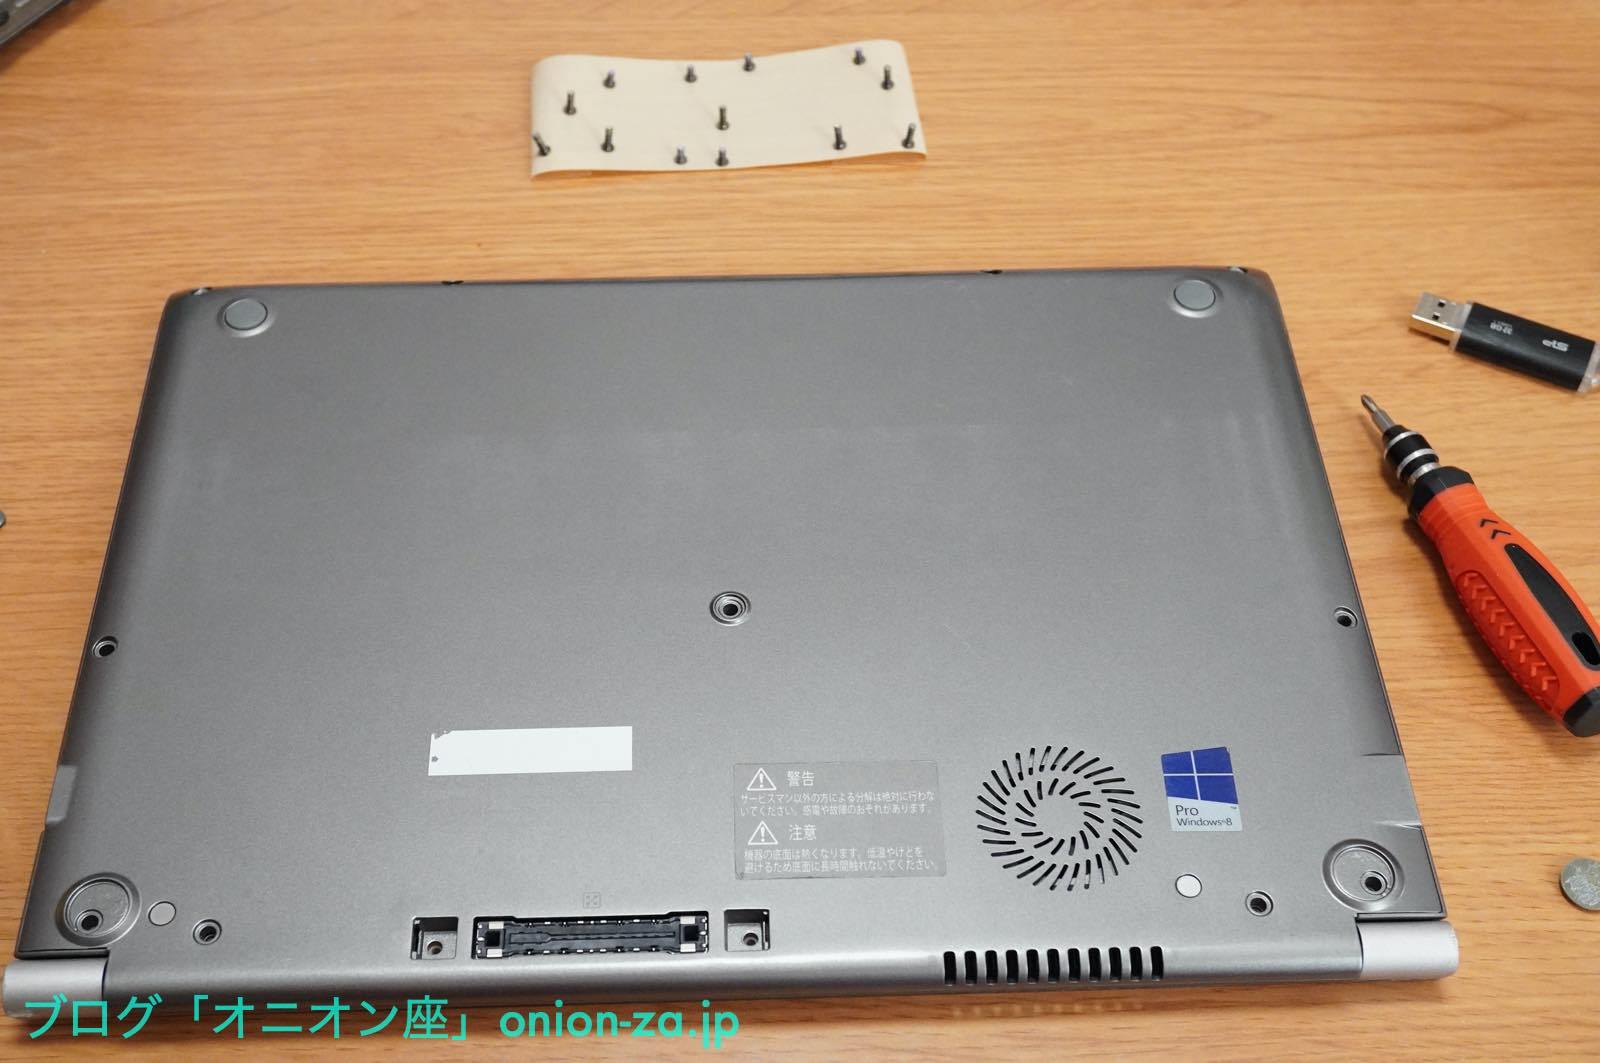 中古パソコンの東芝ダイナブックR634/Mを買ってｍSATA SSDを交換して 